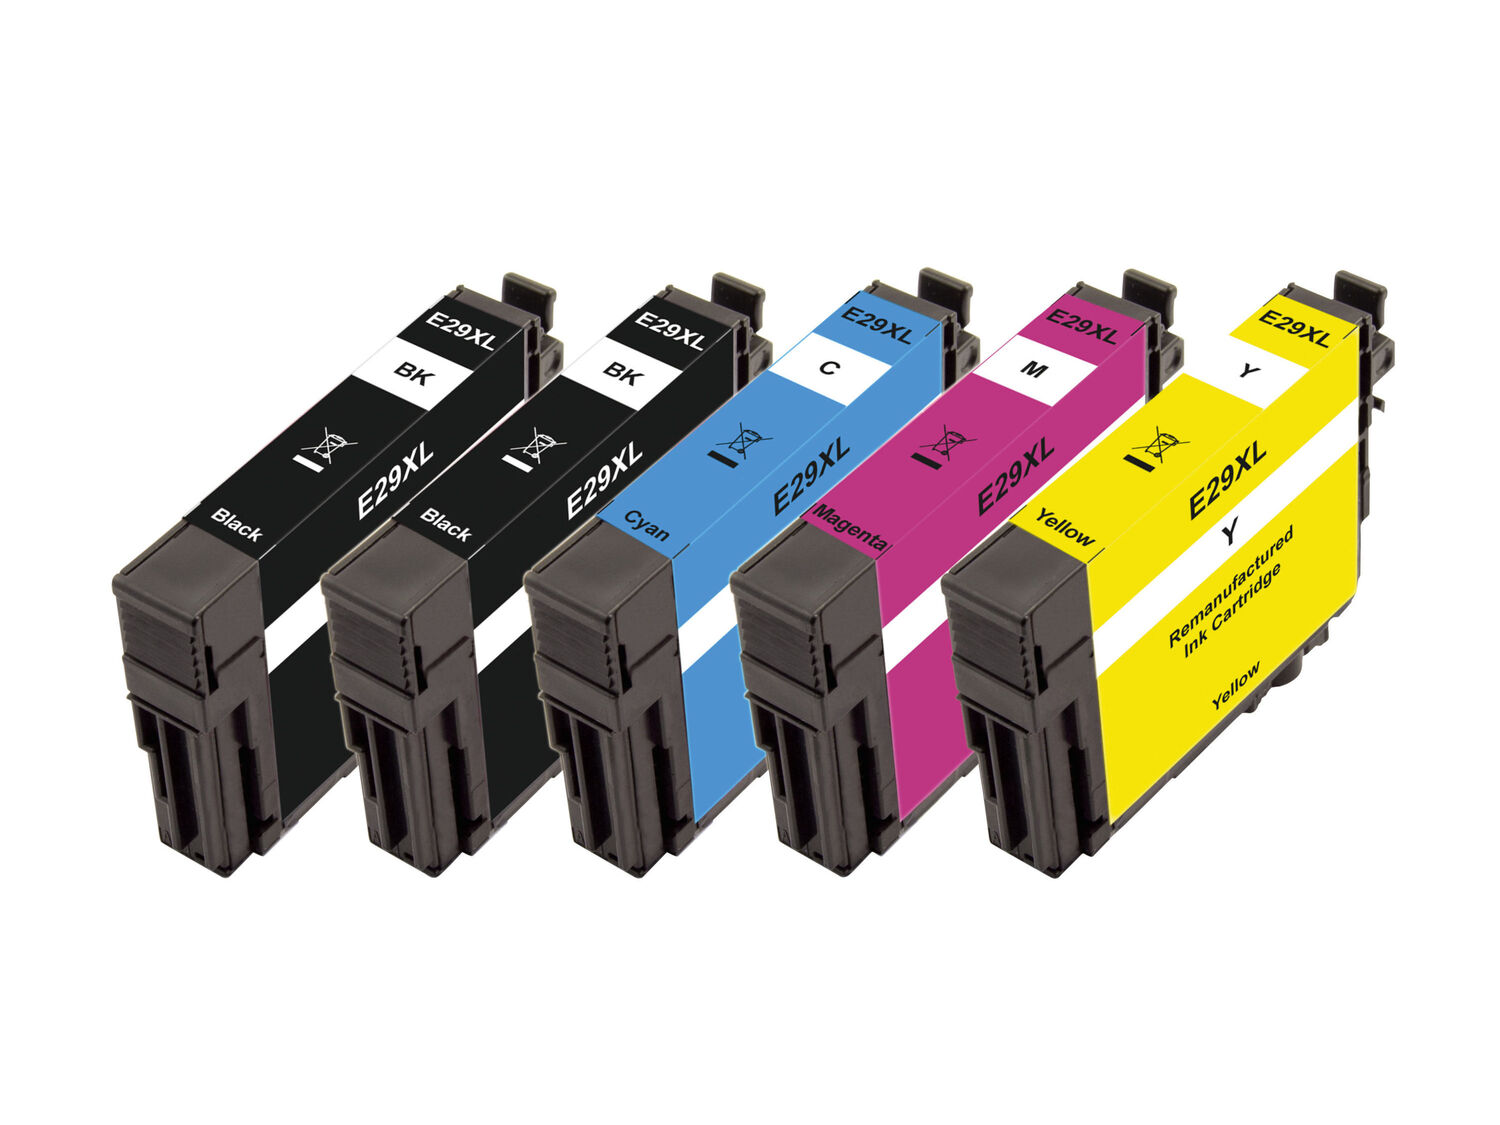 Cartucce Multipack per stampanti Canon, Epson, HP Peach, prezzo 6.99 € 
5 pezzi ...